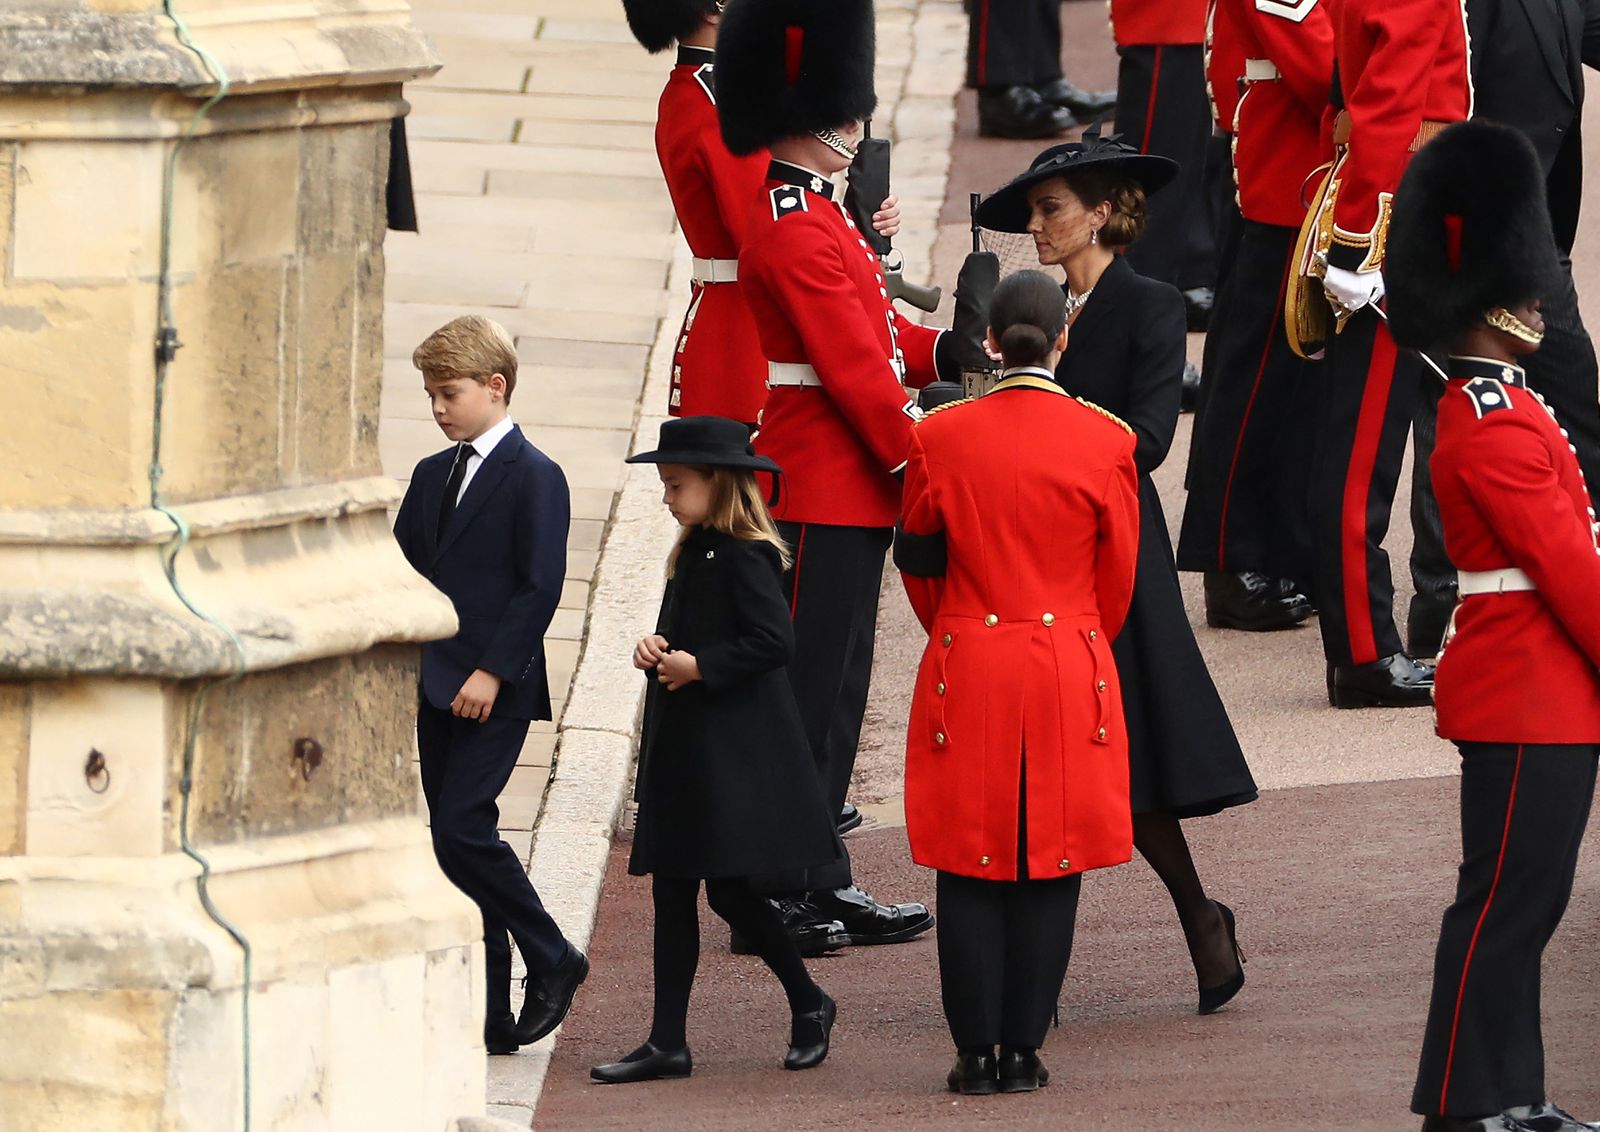 الأميران جورج وشارلوت يسيران خلف نعش الملكة اليزابيث الثانية ووالدتهما كاثرين أميرة ويلز يصلون إلى كنيسة سانت جورج داخل قلعة وندسور- 19 سبتمبر 2022 - AFP